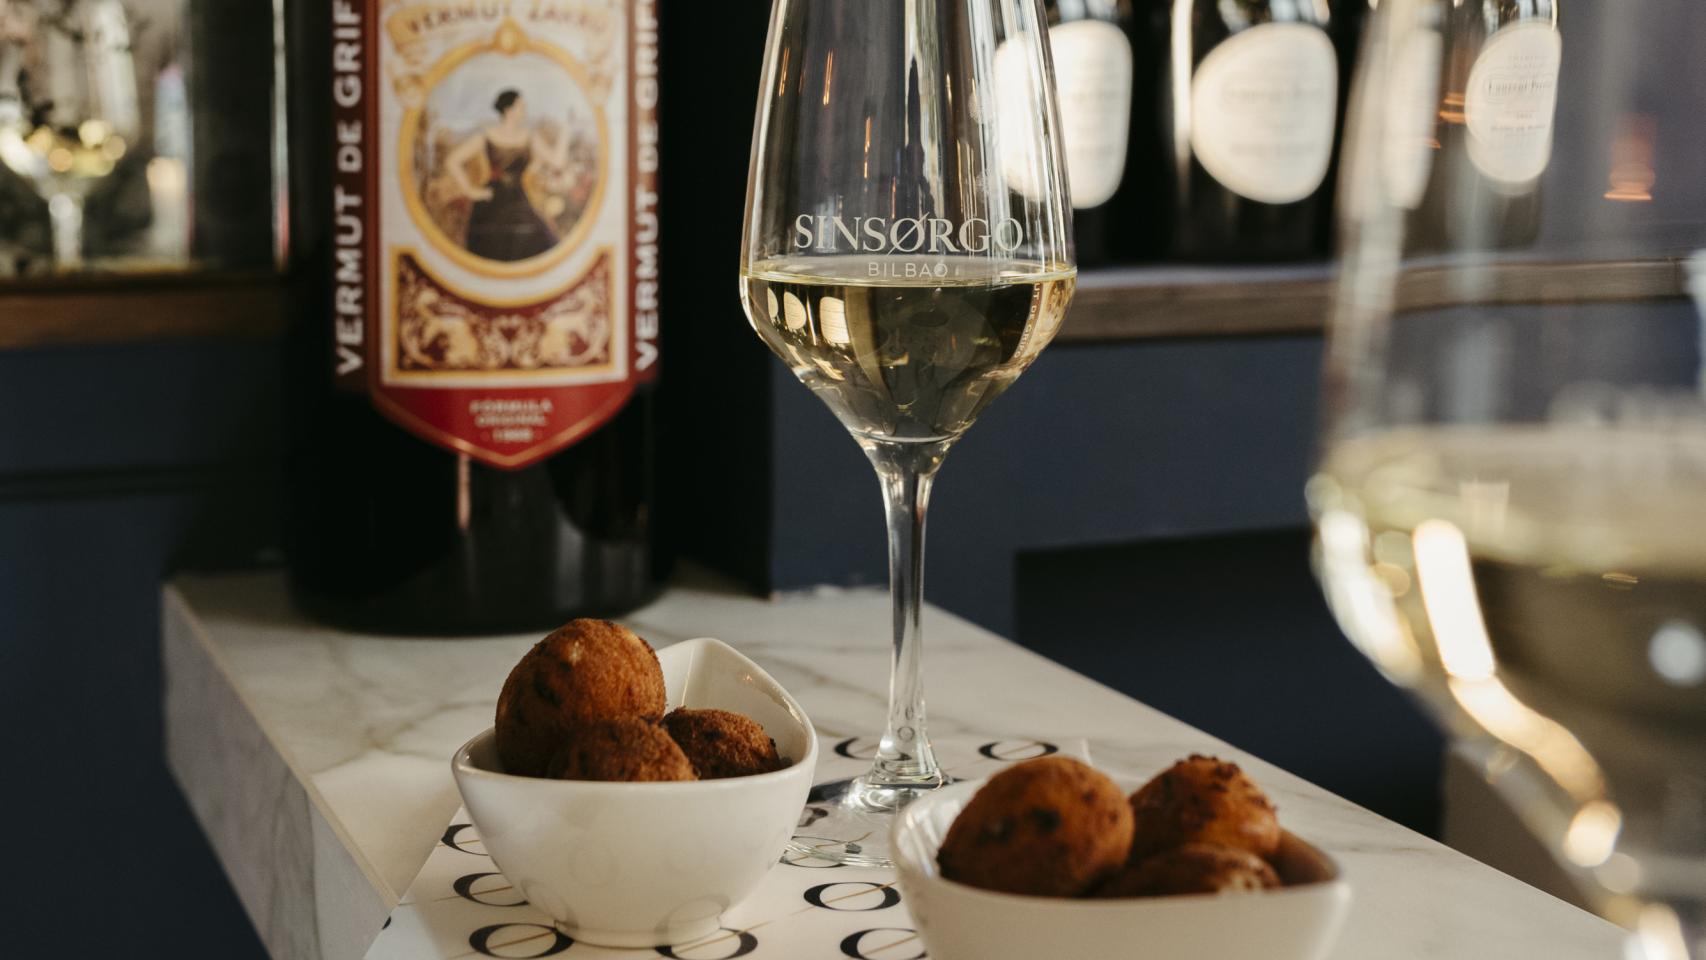 Sinsorgo es la nueva barra de pintxos vascos en pleno centro de Madrid especializado en vino, vermú y croquetas.